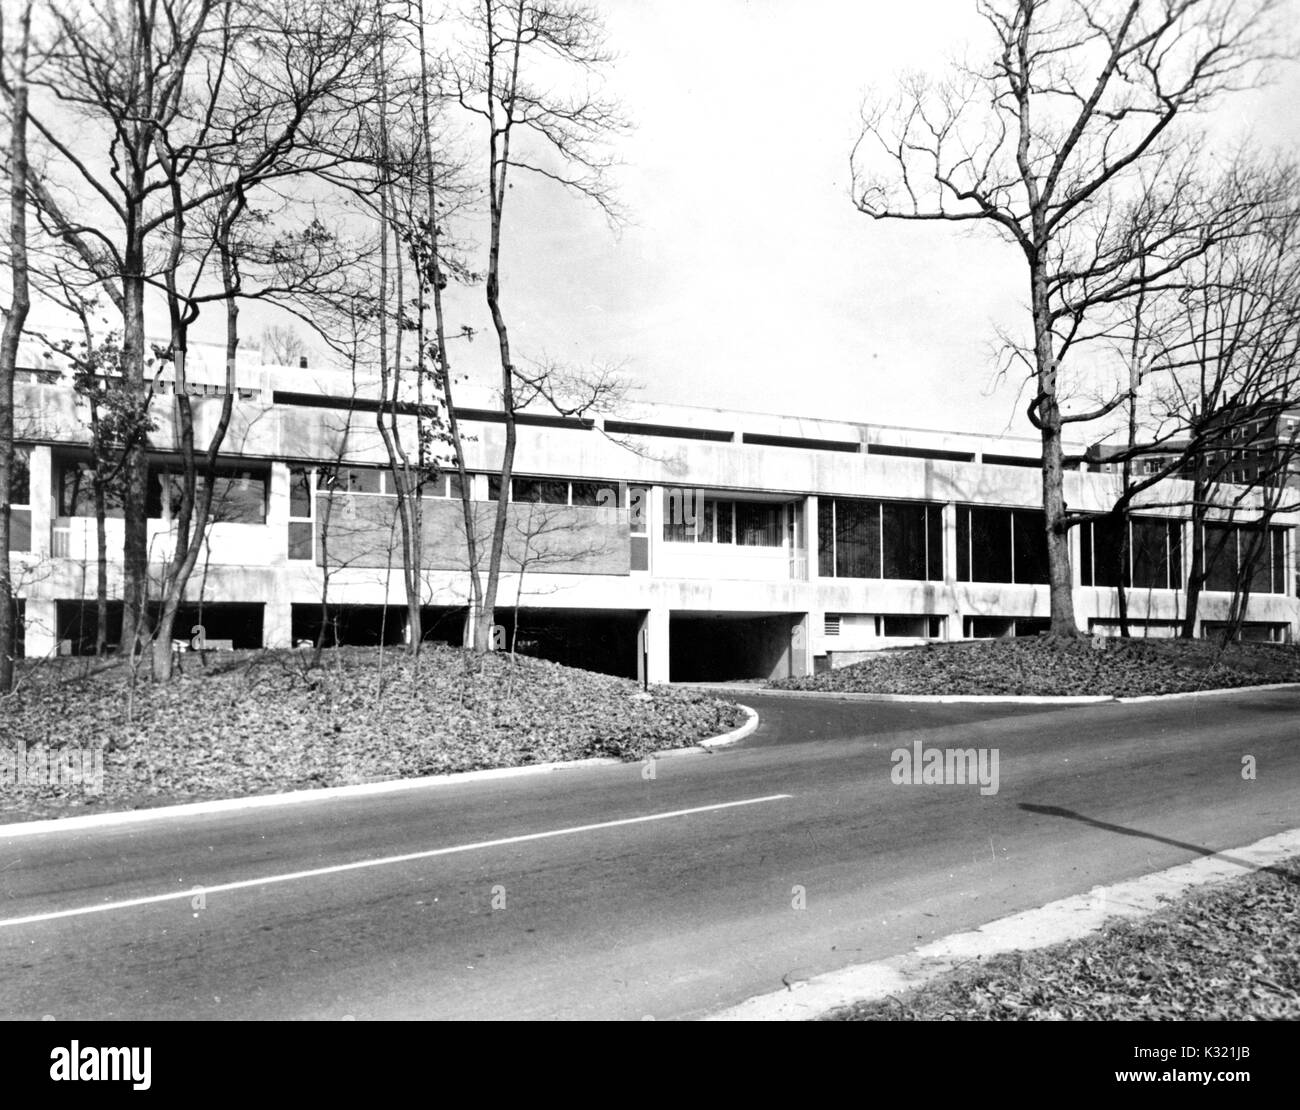 Esterno del Dipartimento di embriologia per il Carnegie Institution for Science, una organizzazione di ricerca, sull'Homewood campus della Johns Hopkins University di Baltimore, Maryland, 1965. Foto Stock